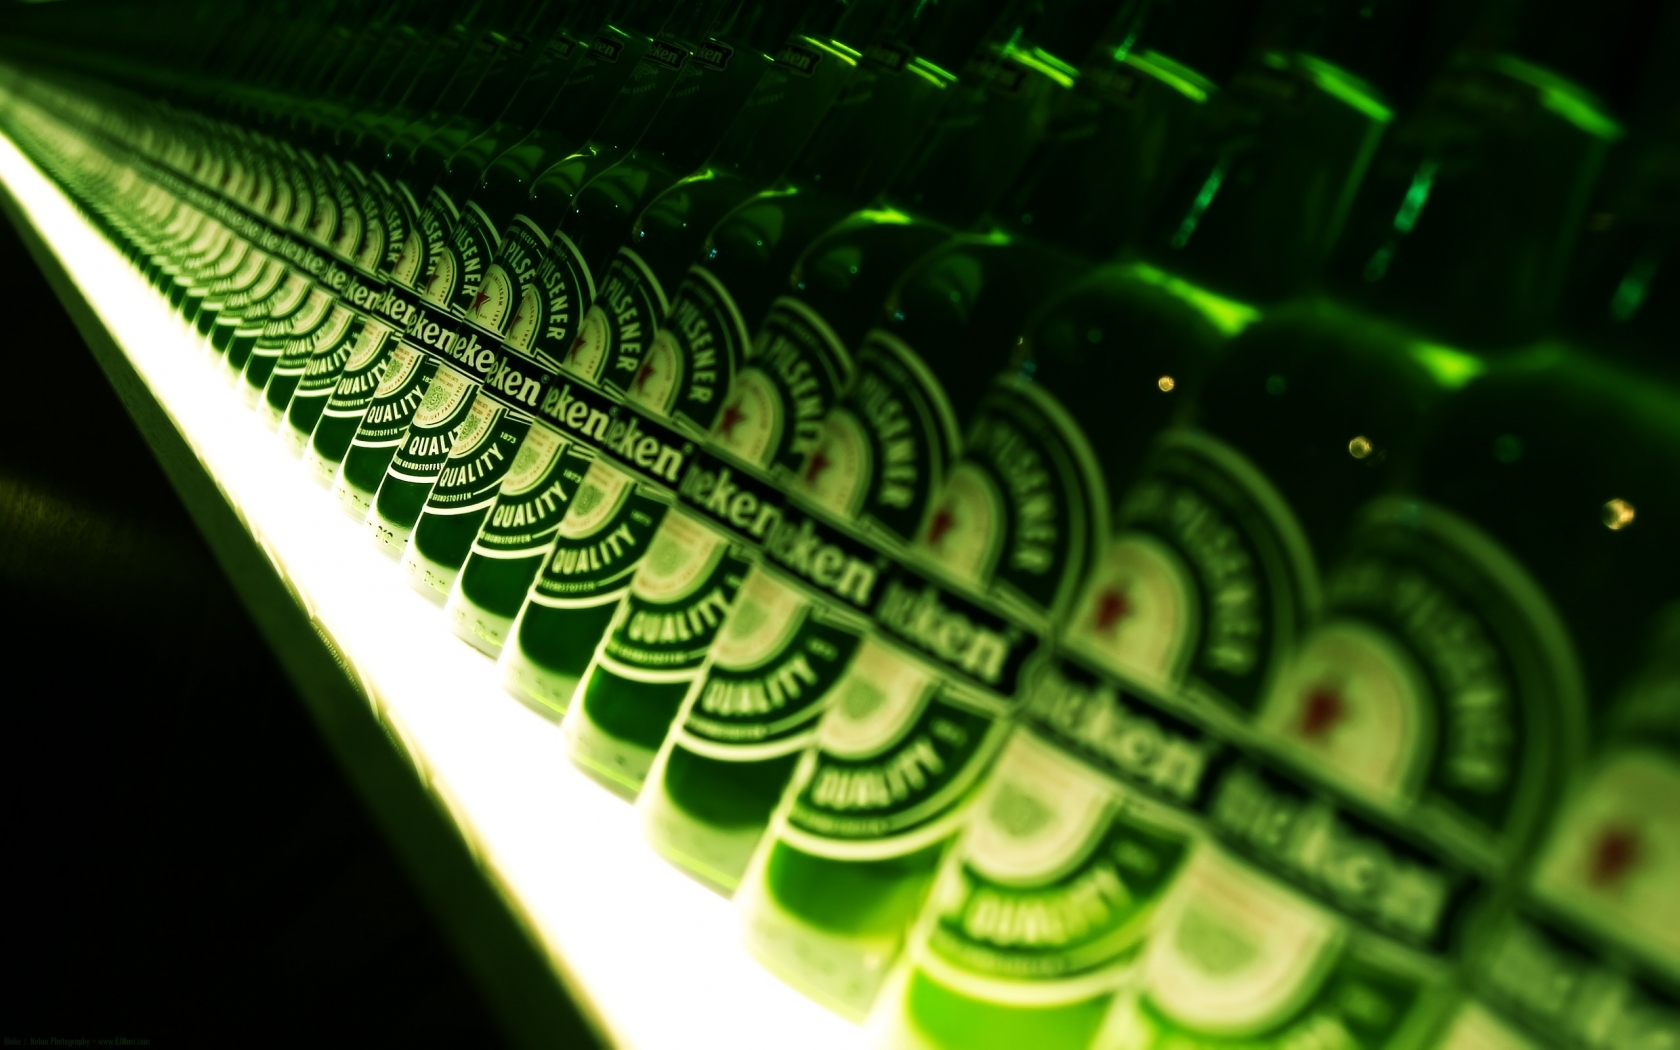 Heineken Anyone for 1680 x 1050 widescreen resolution